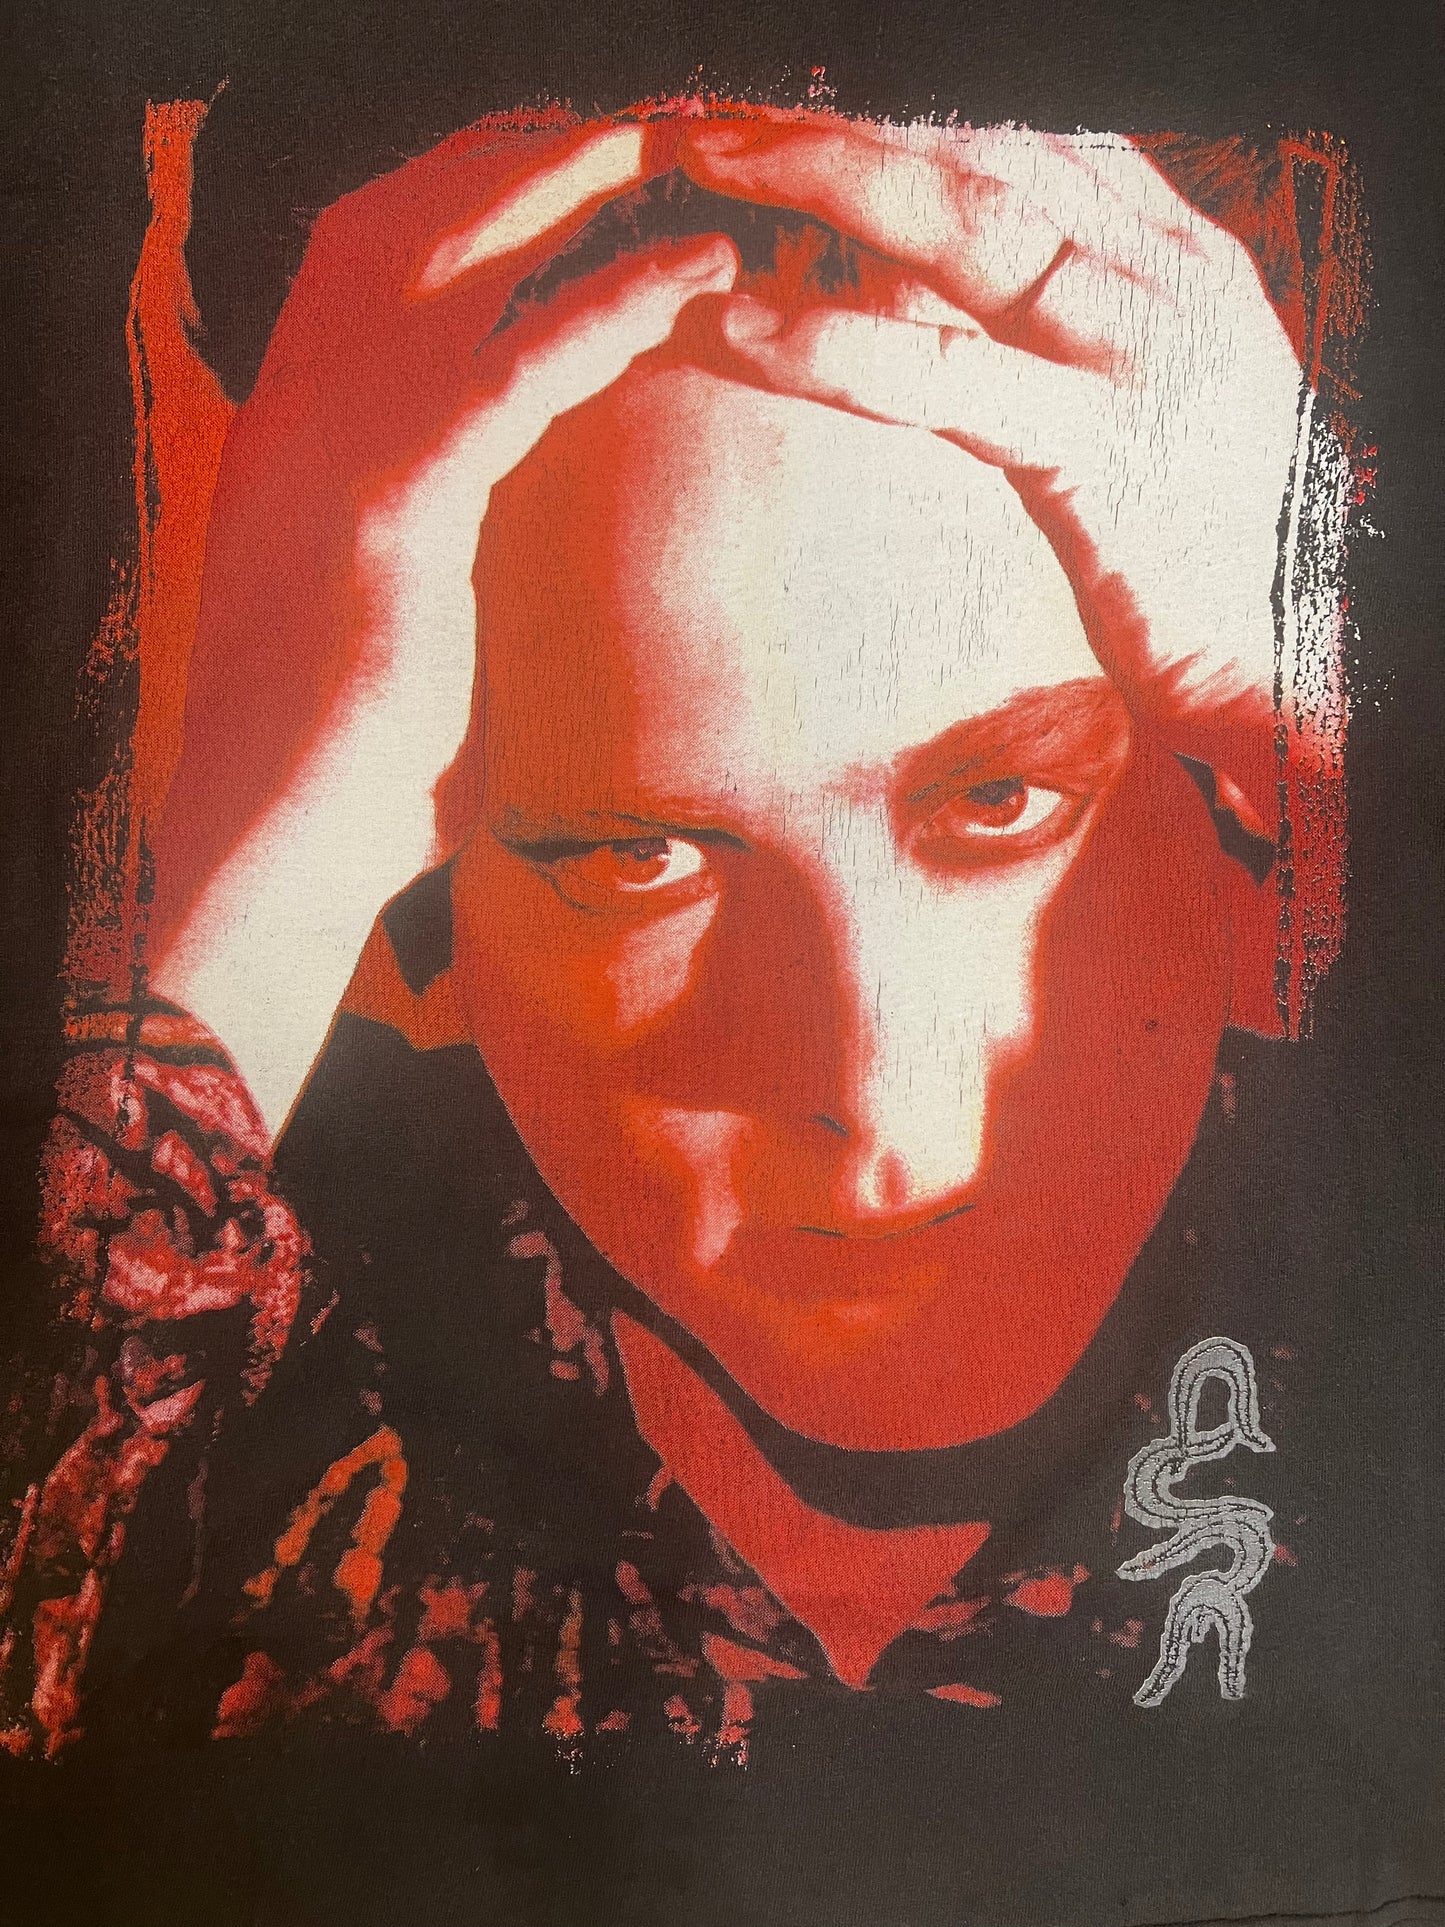 The Cure 1992 Wish Tour Vintage T Shirt